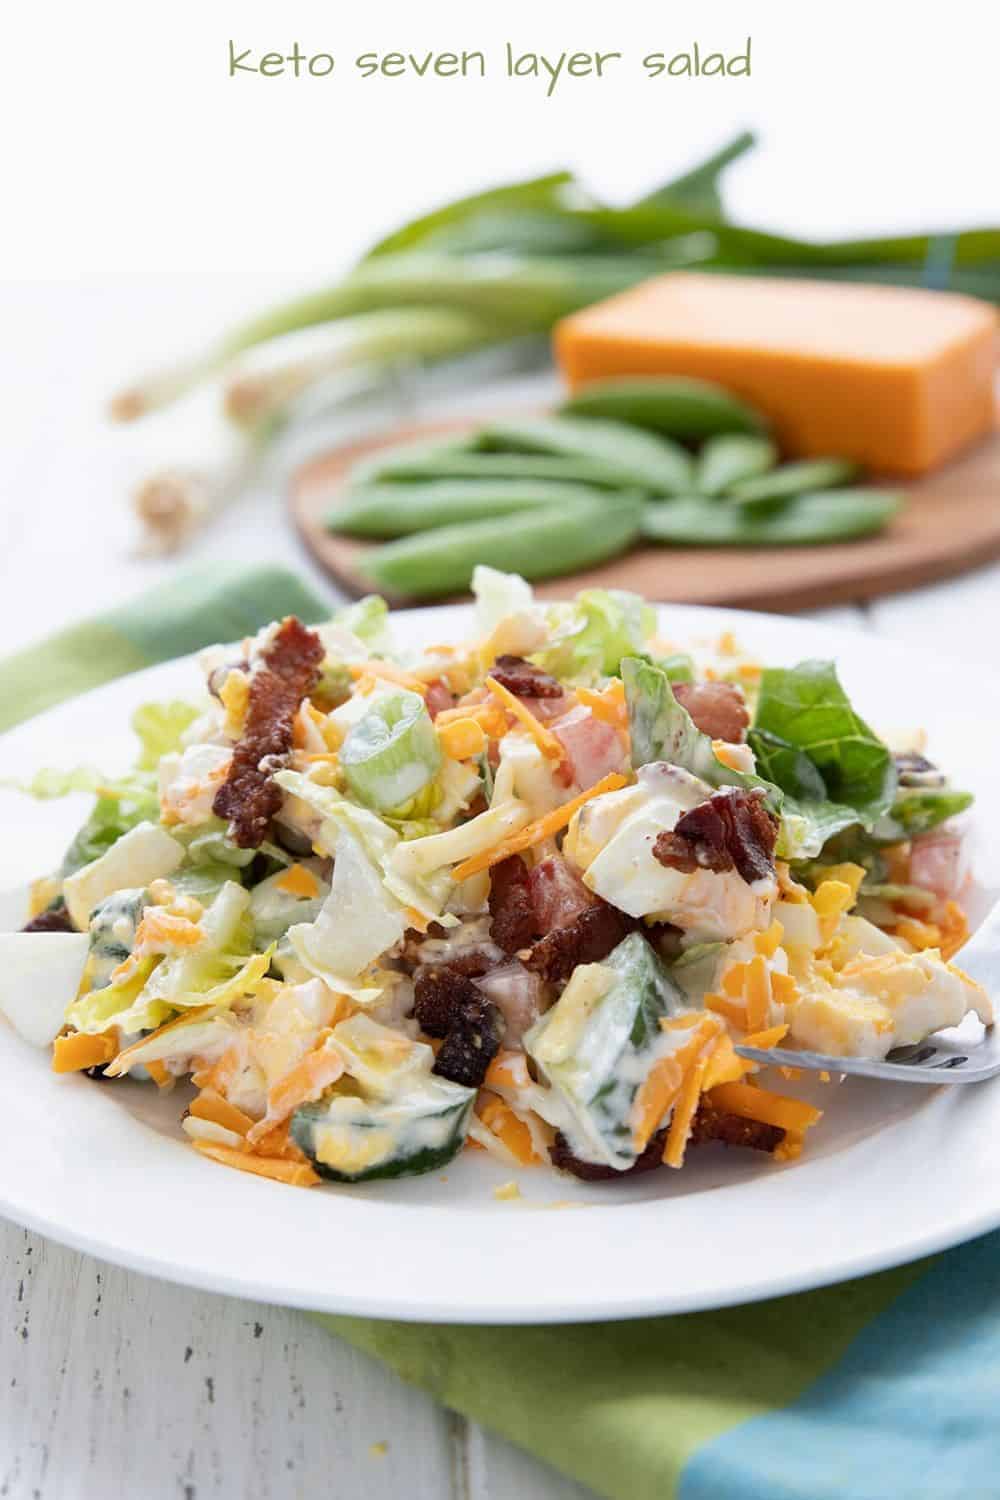 Delicious Low-Carb Snap Pea Salad Recipe - Simply So Healthy